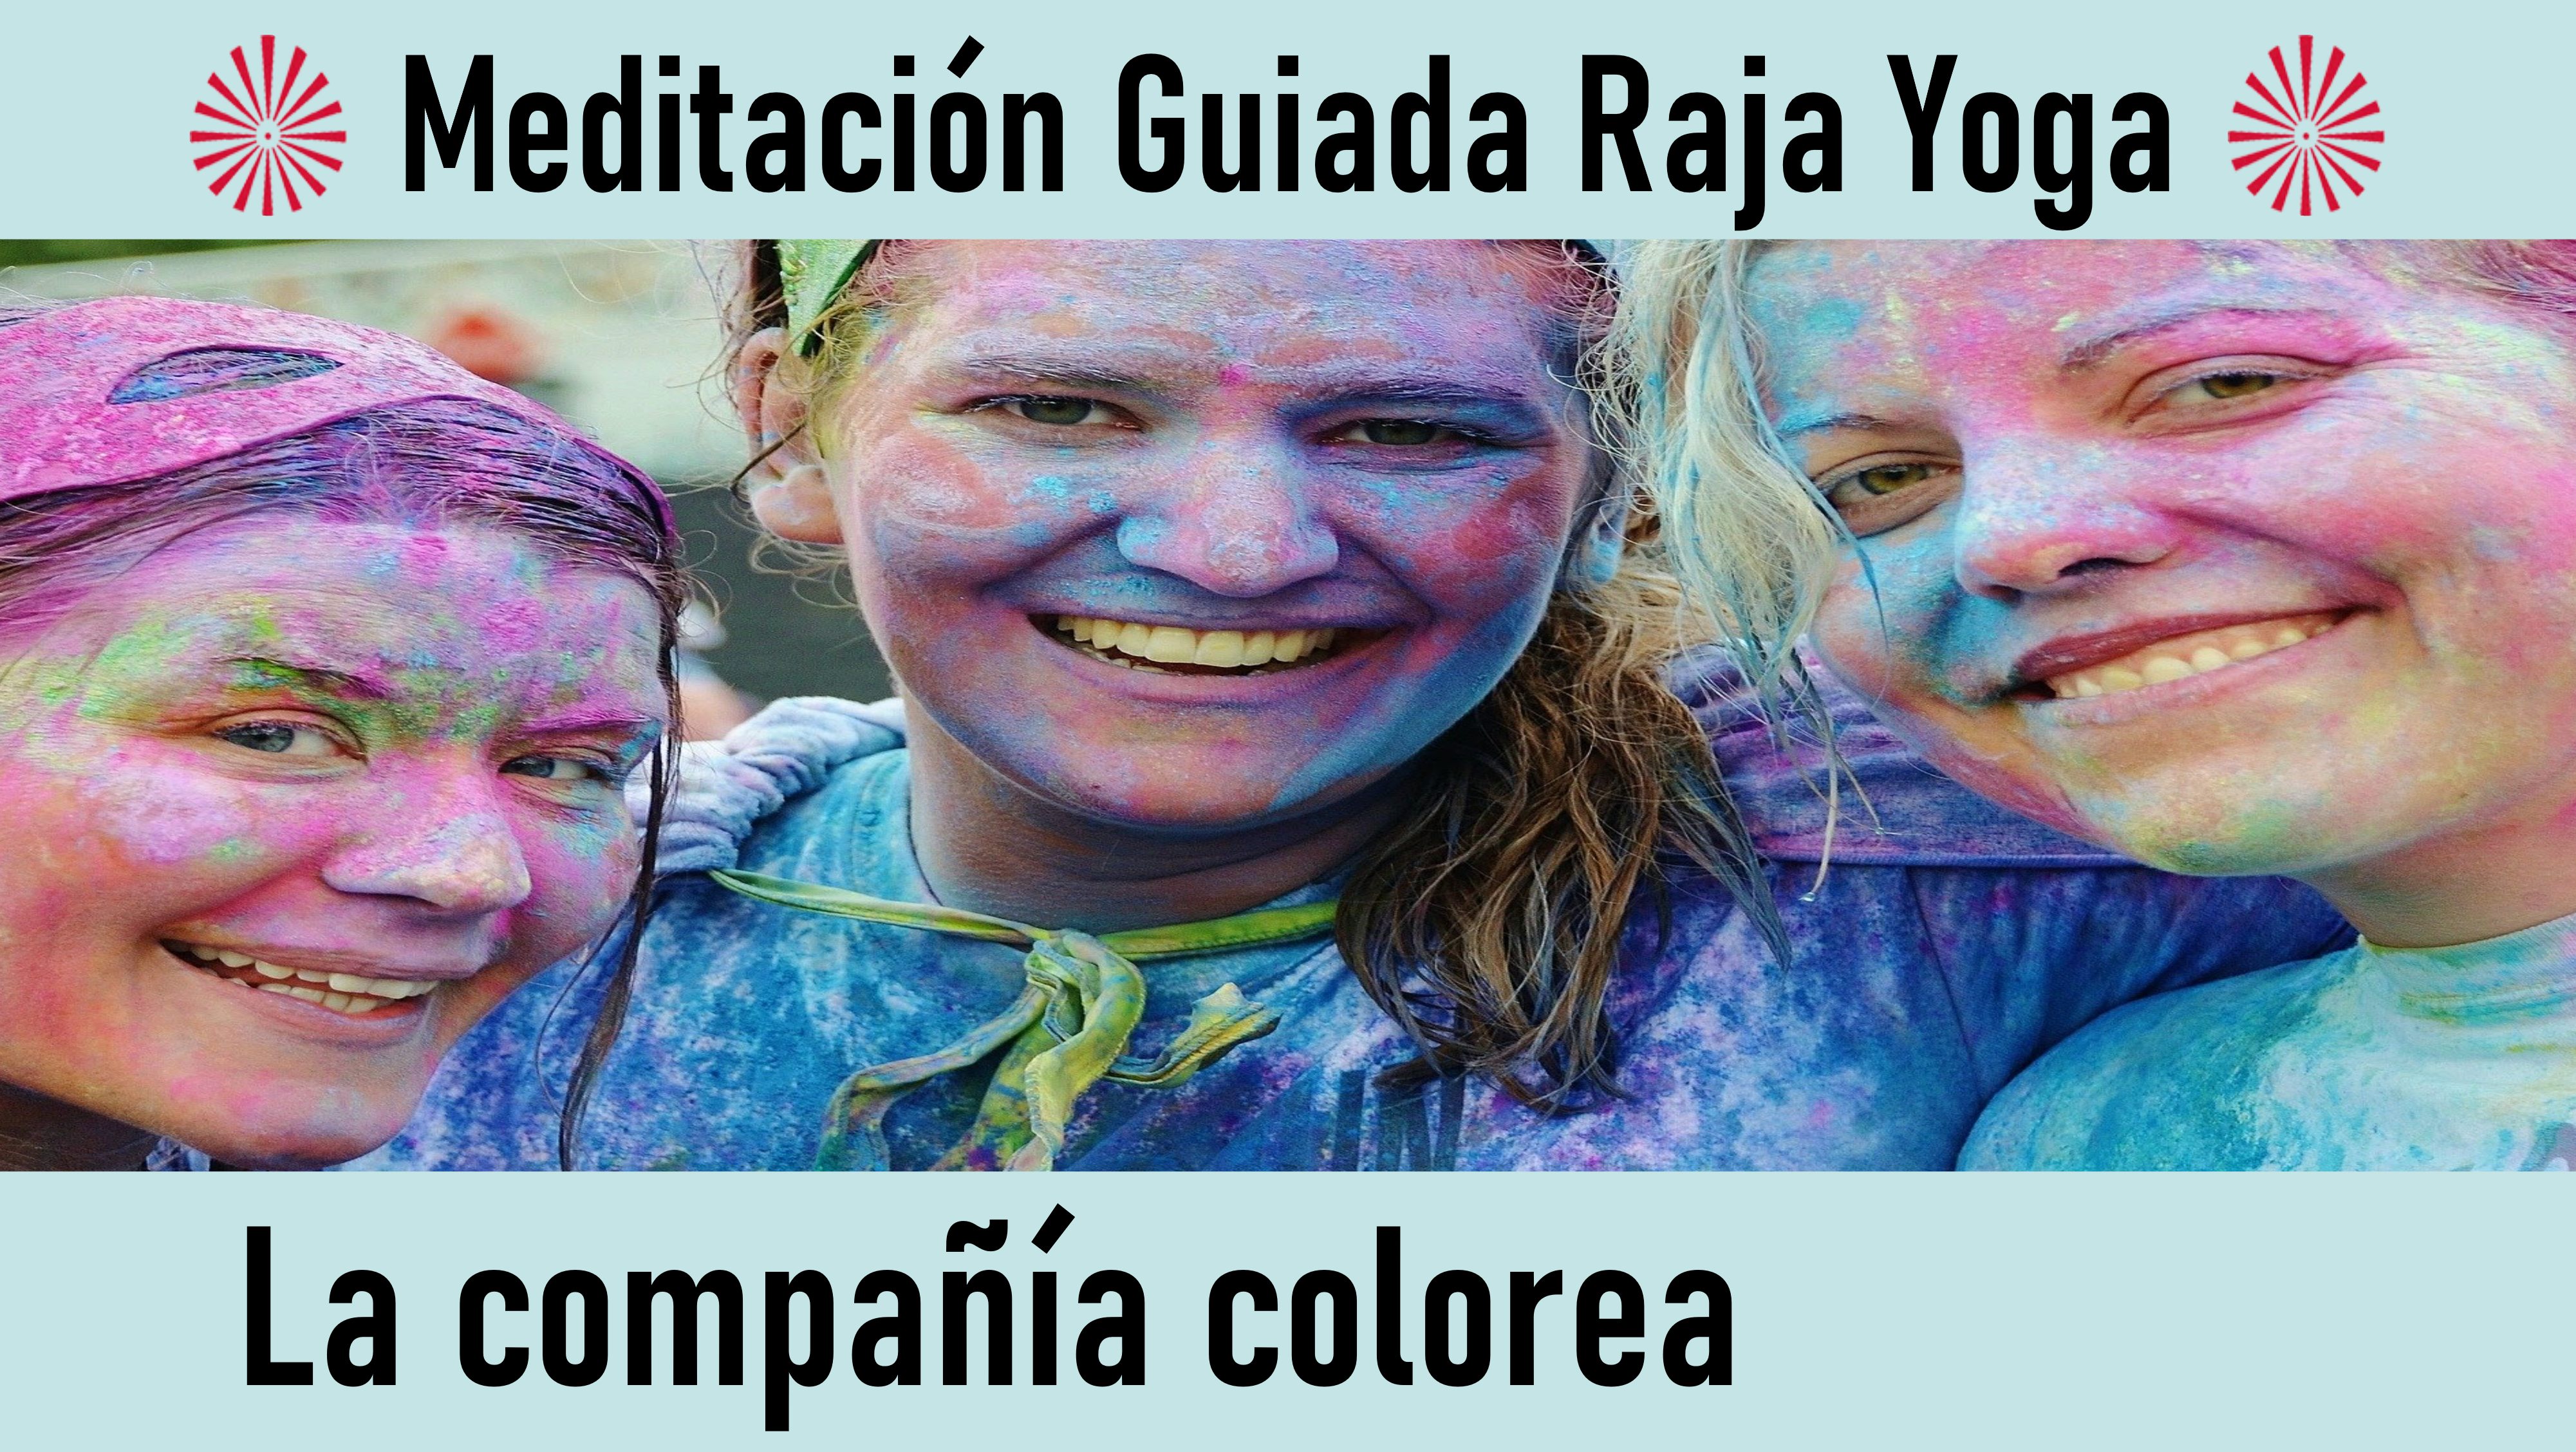 Meditación Raja Yoga: La compañía colorea (2 Septiembre 2020) On-line desde Sevilla